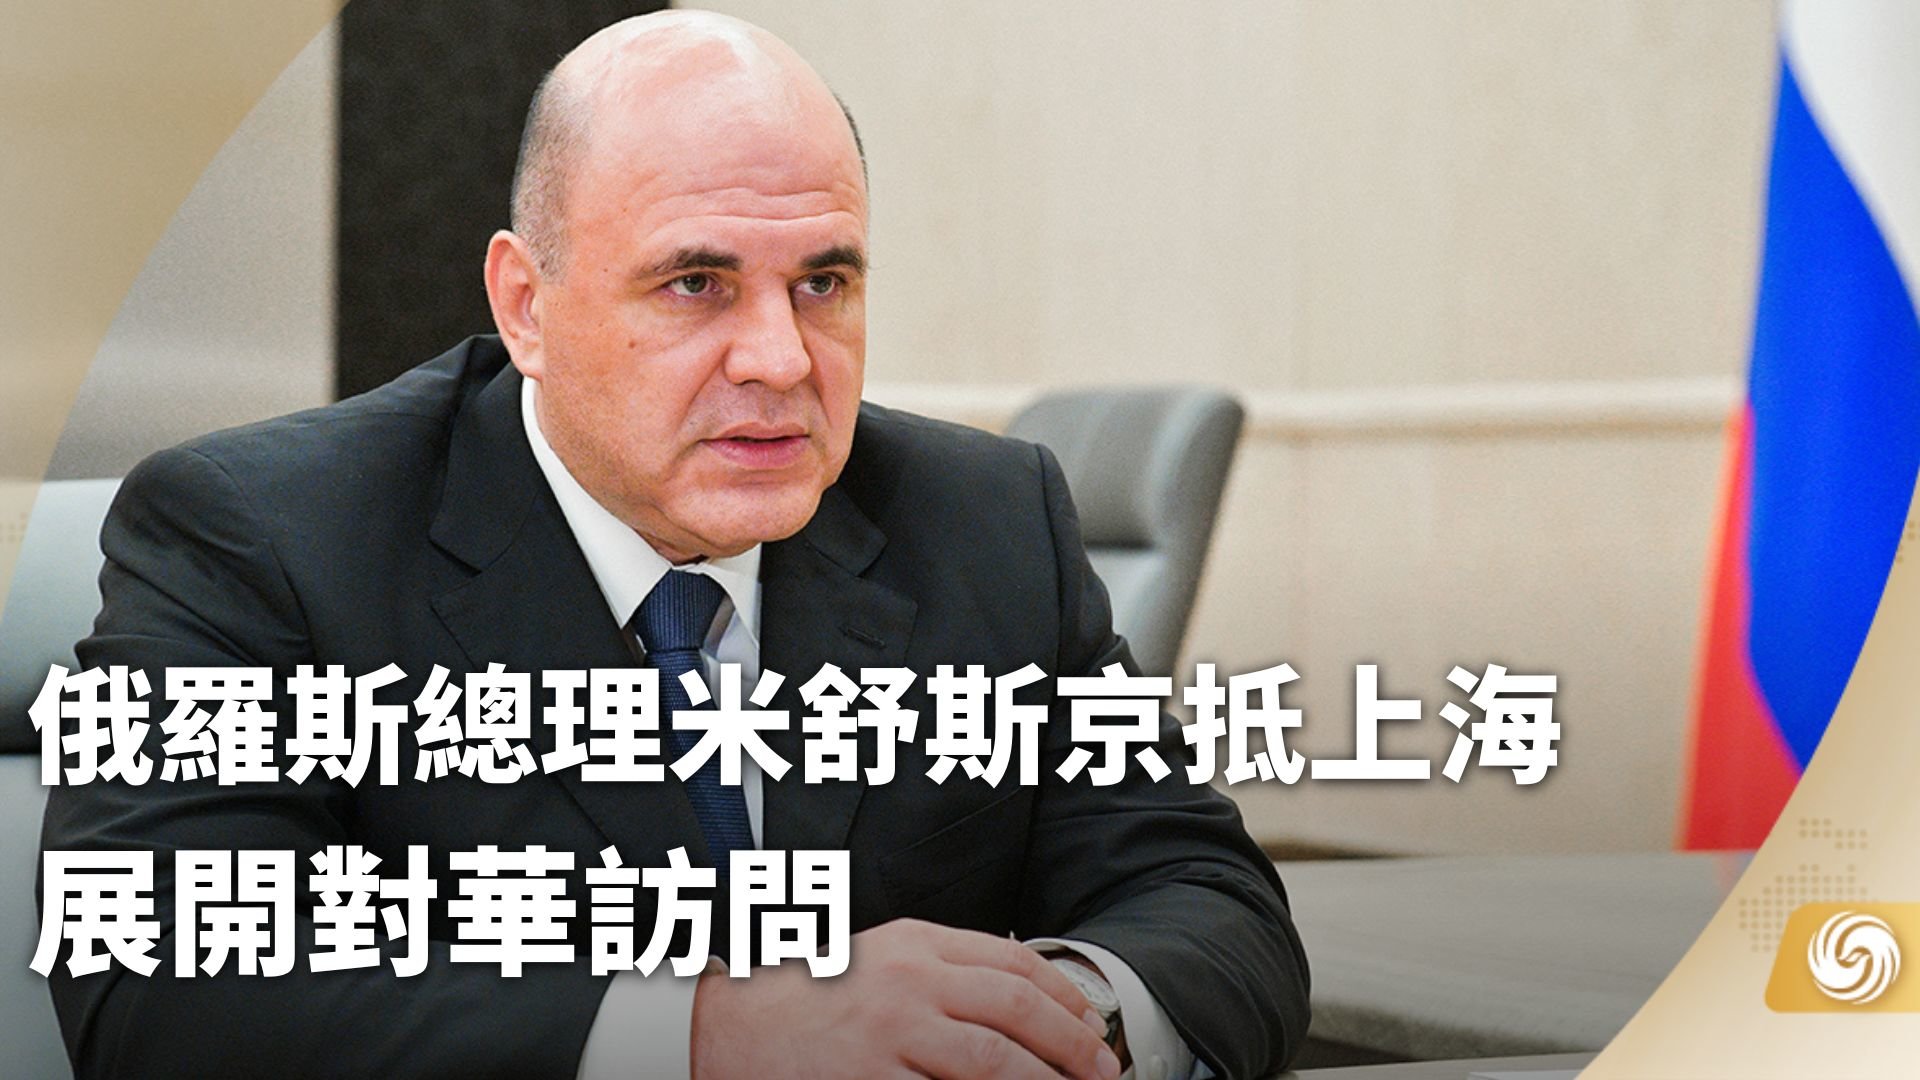 李克强同俄罗斯总理米舒斯京共同主持中俄总理第二十七次定期会晤 韩正出席 - 中国军网